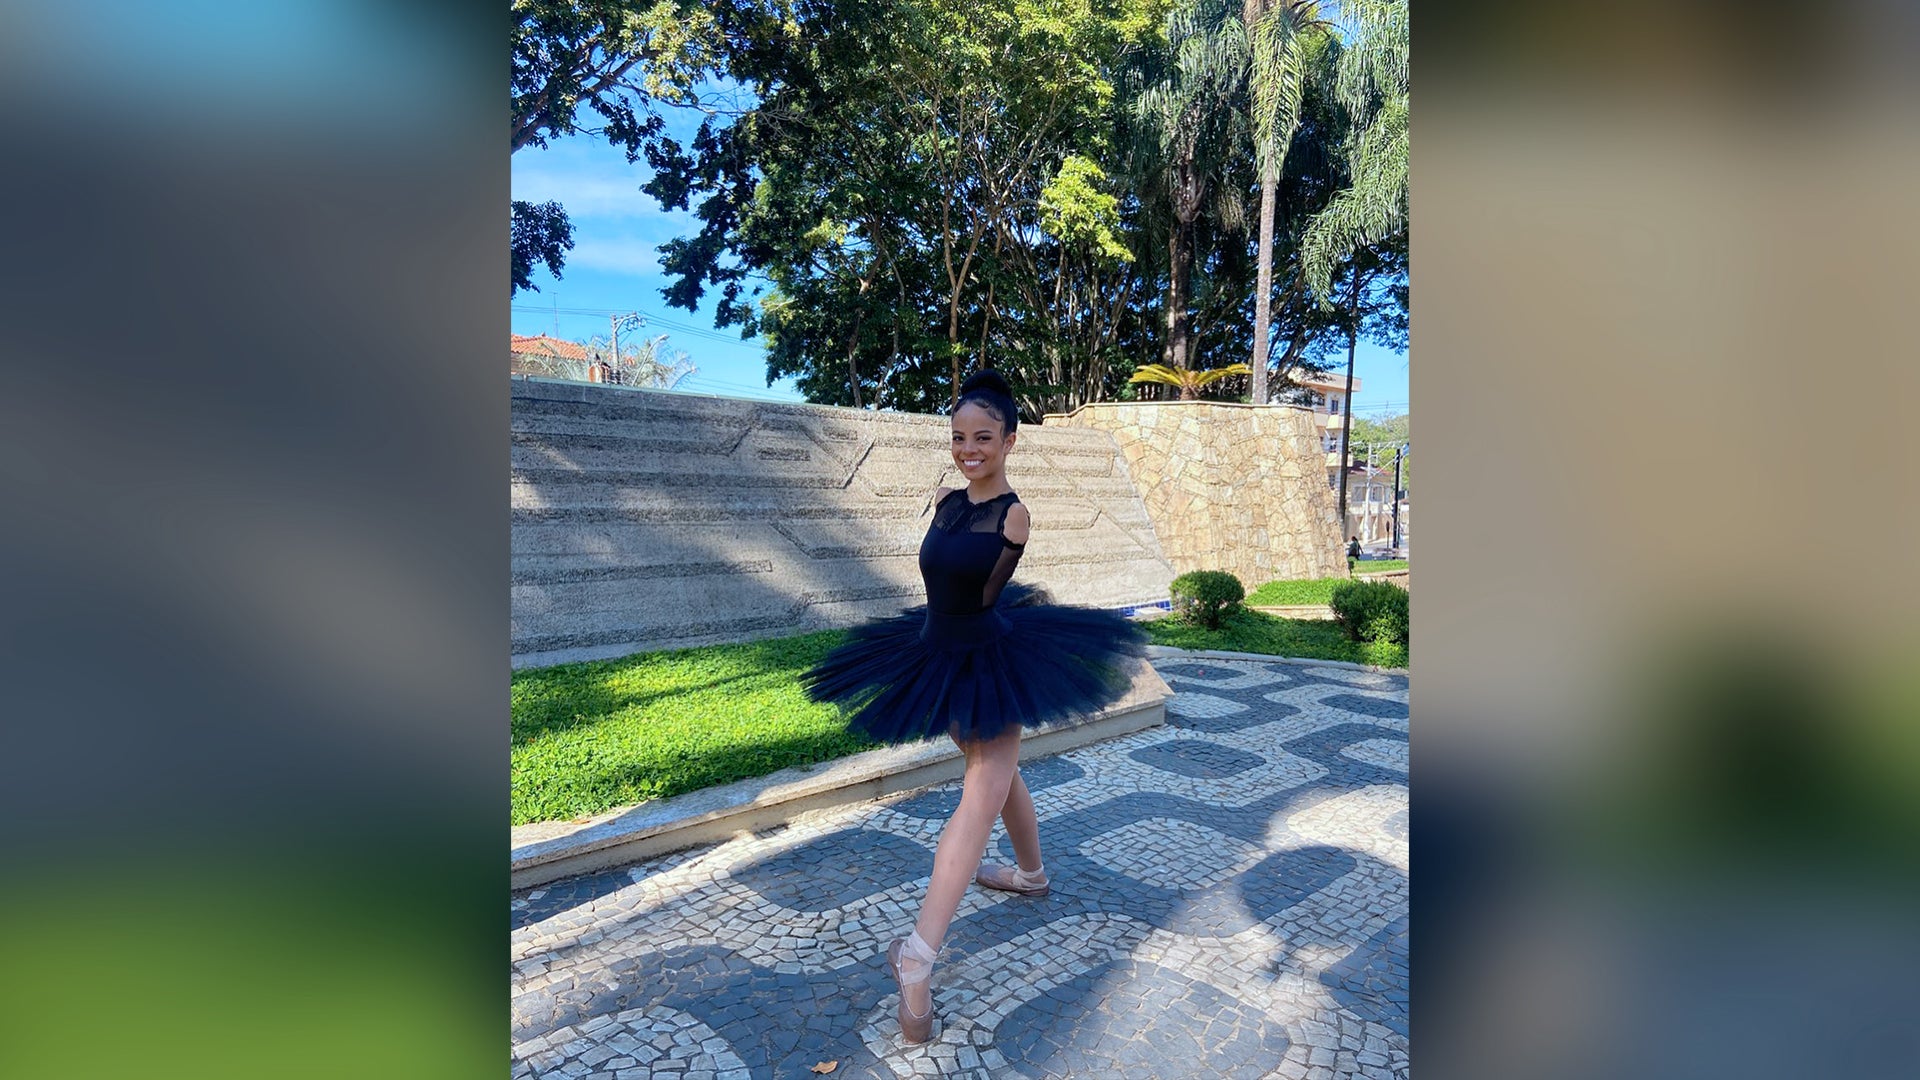 Bailarina brasileira sem braços impressiona o America’s Got Talent e o mundo